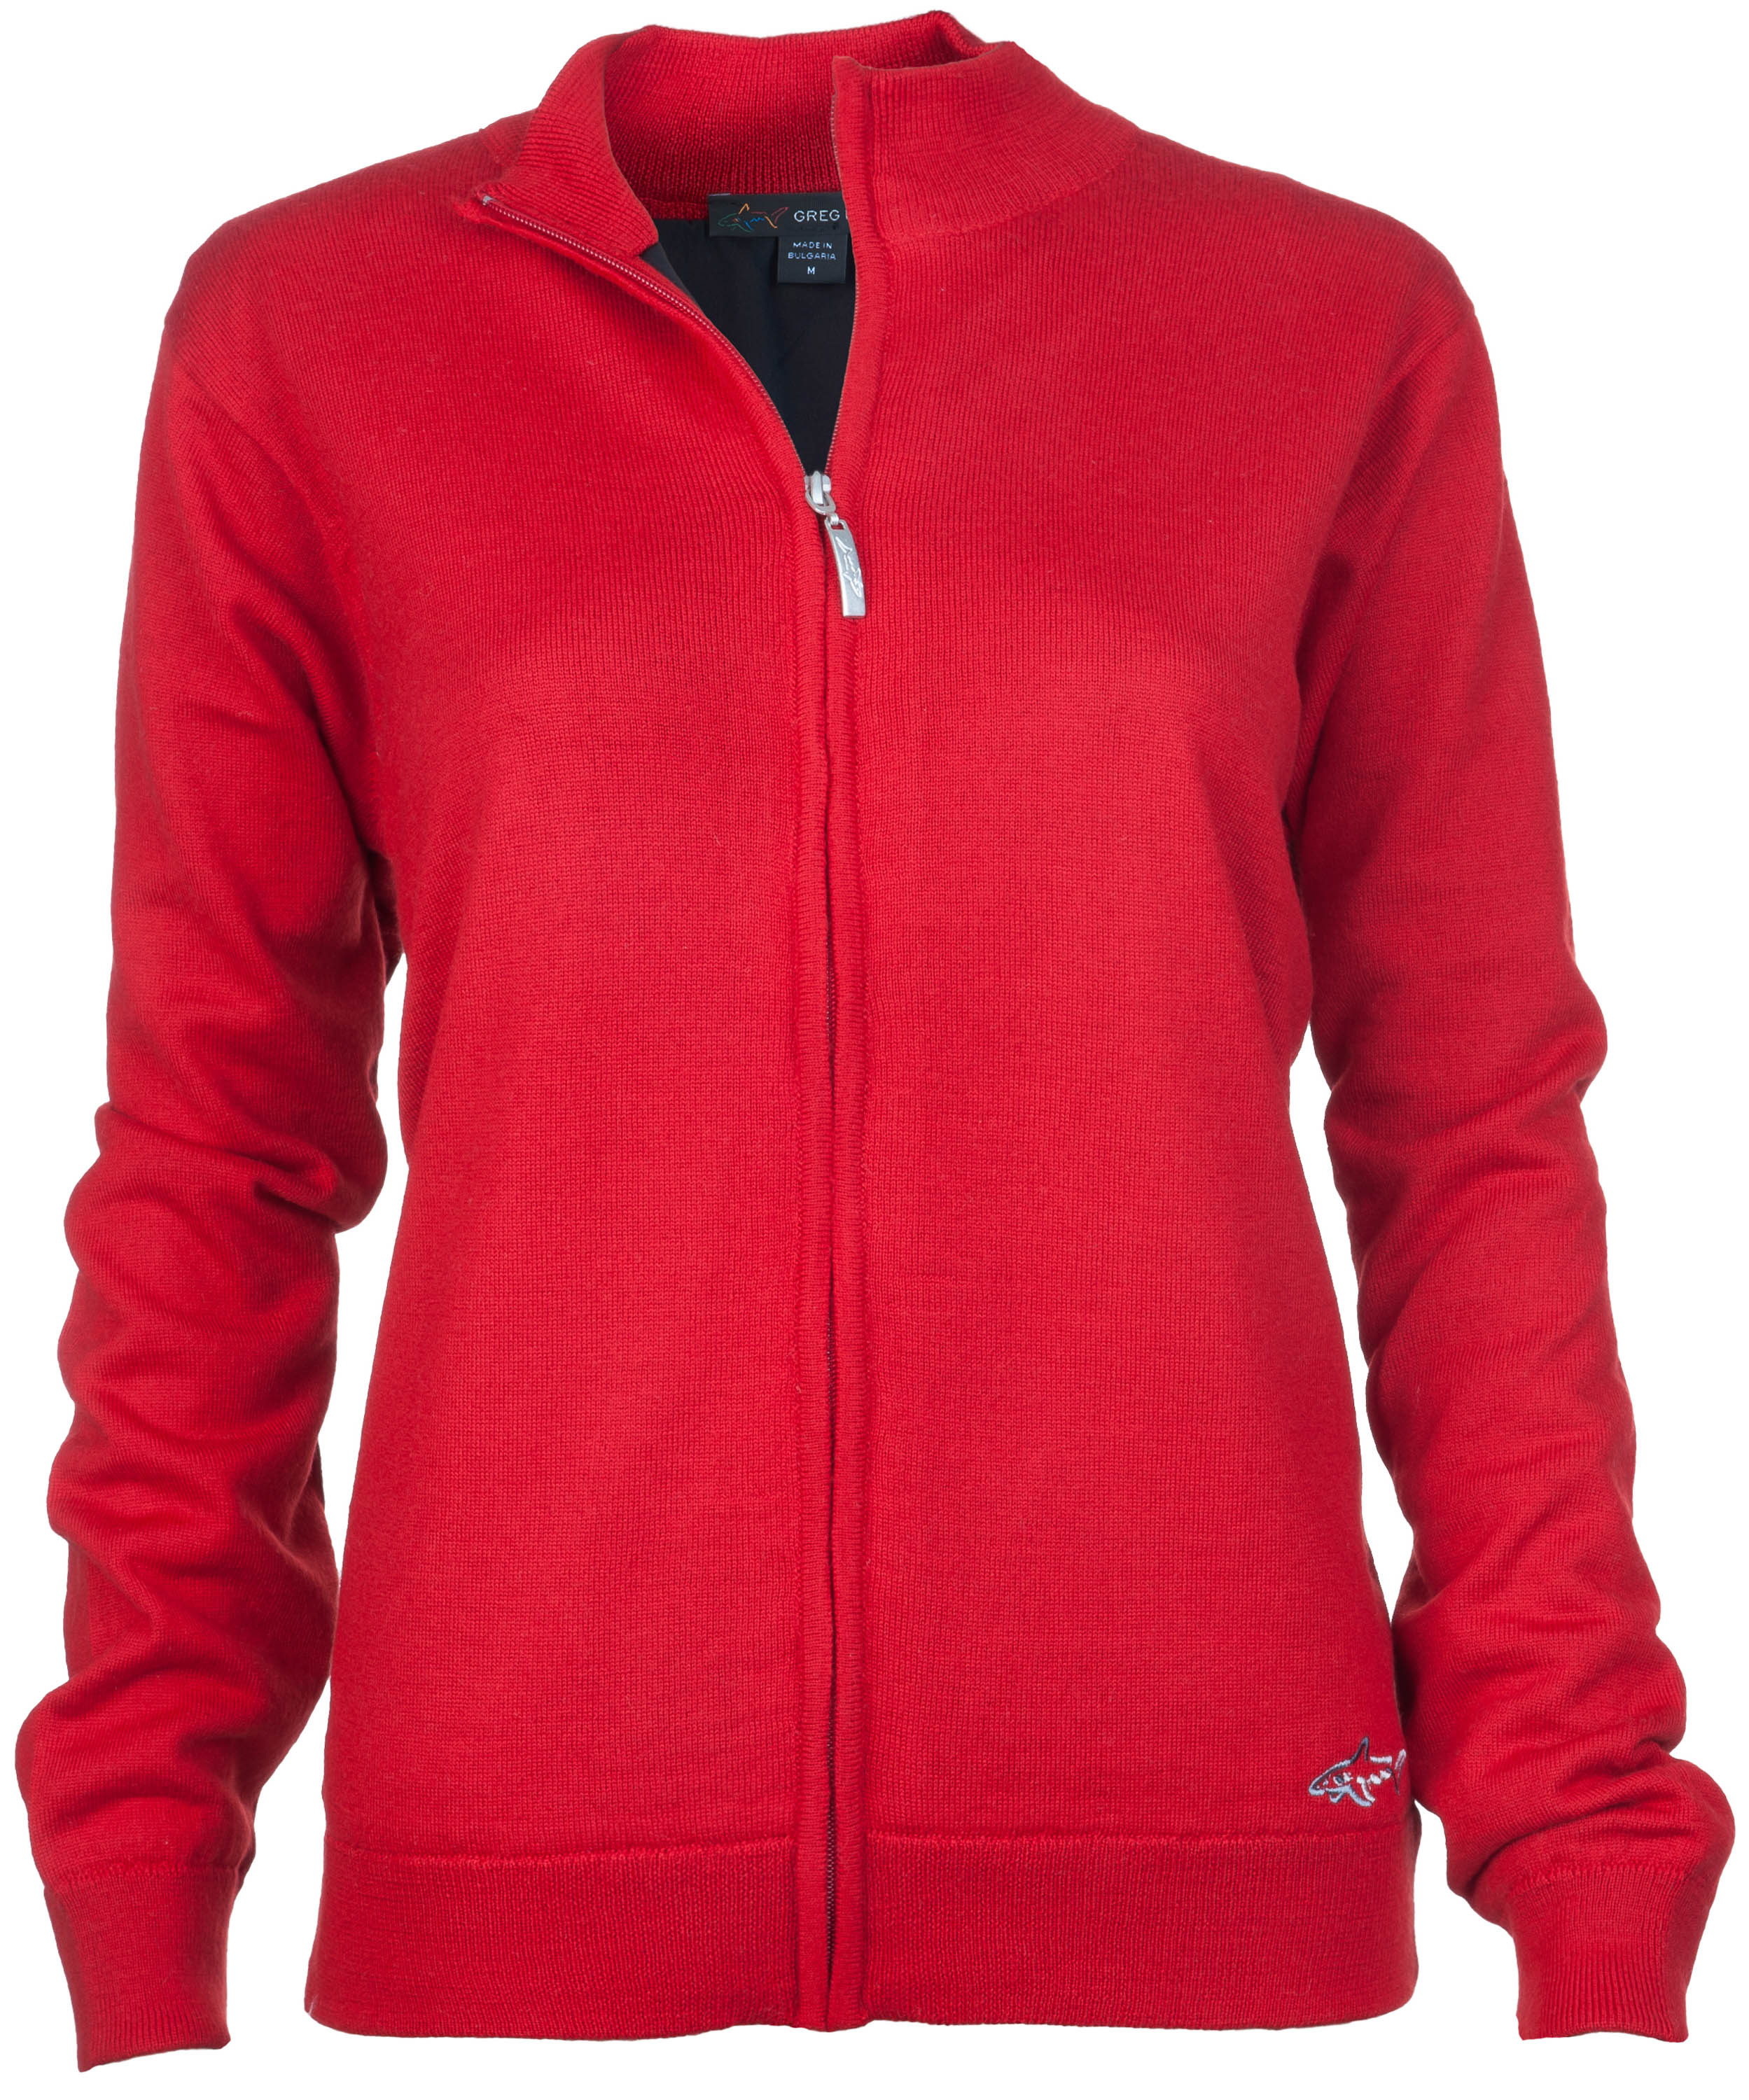 Greg Norman Windbreaker Lined Full-Zip Sweater, red